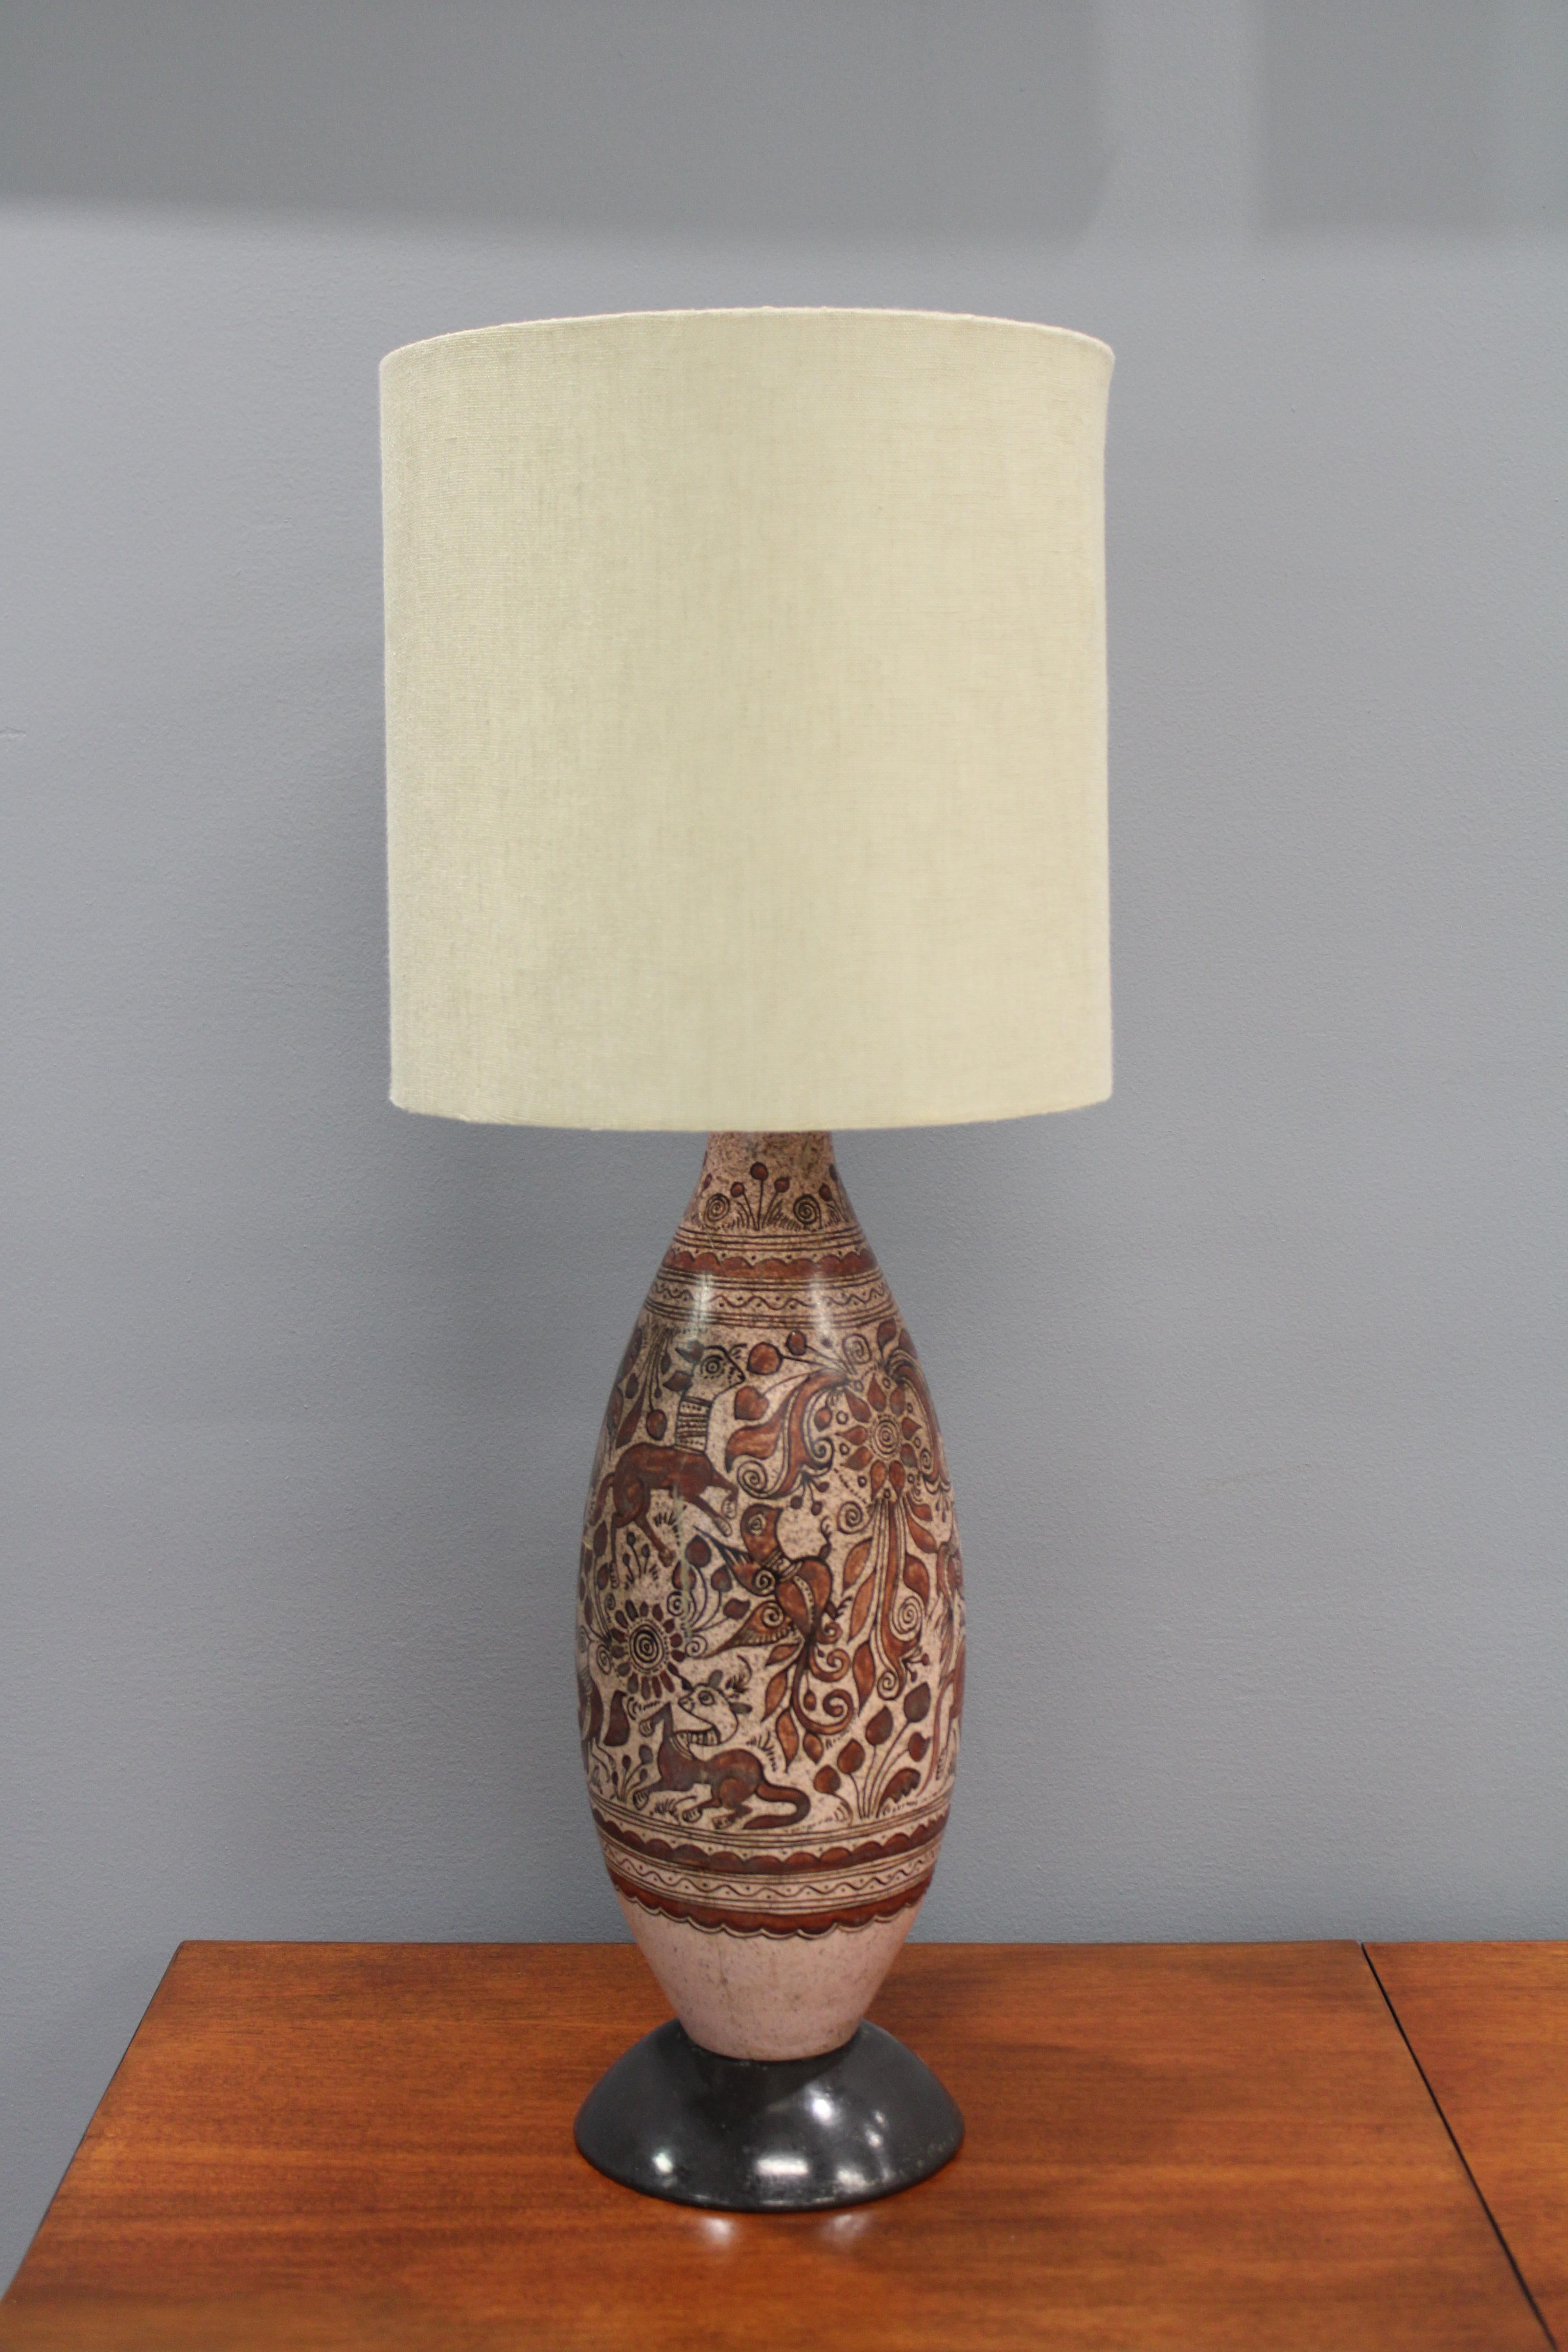 Une grande lampe de table par Felix Tissot circa 1960s. Cette pièce est la décoration parfaite pour votre chambre. L'abat-jour n'est pas inclus.
Felix Tissot était un céramiste français qui a travaillé dans l'industrie cinématographique au début du